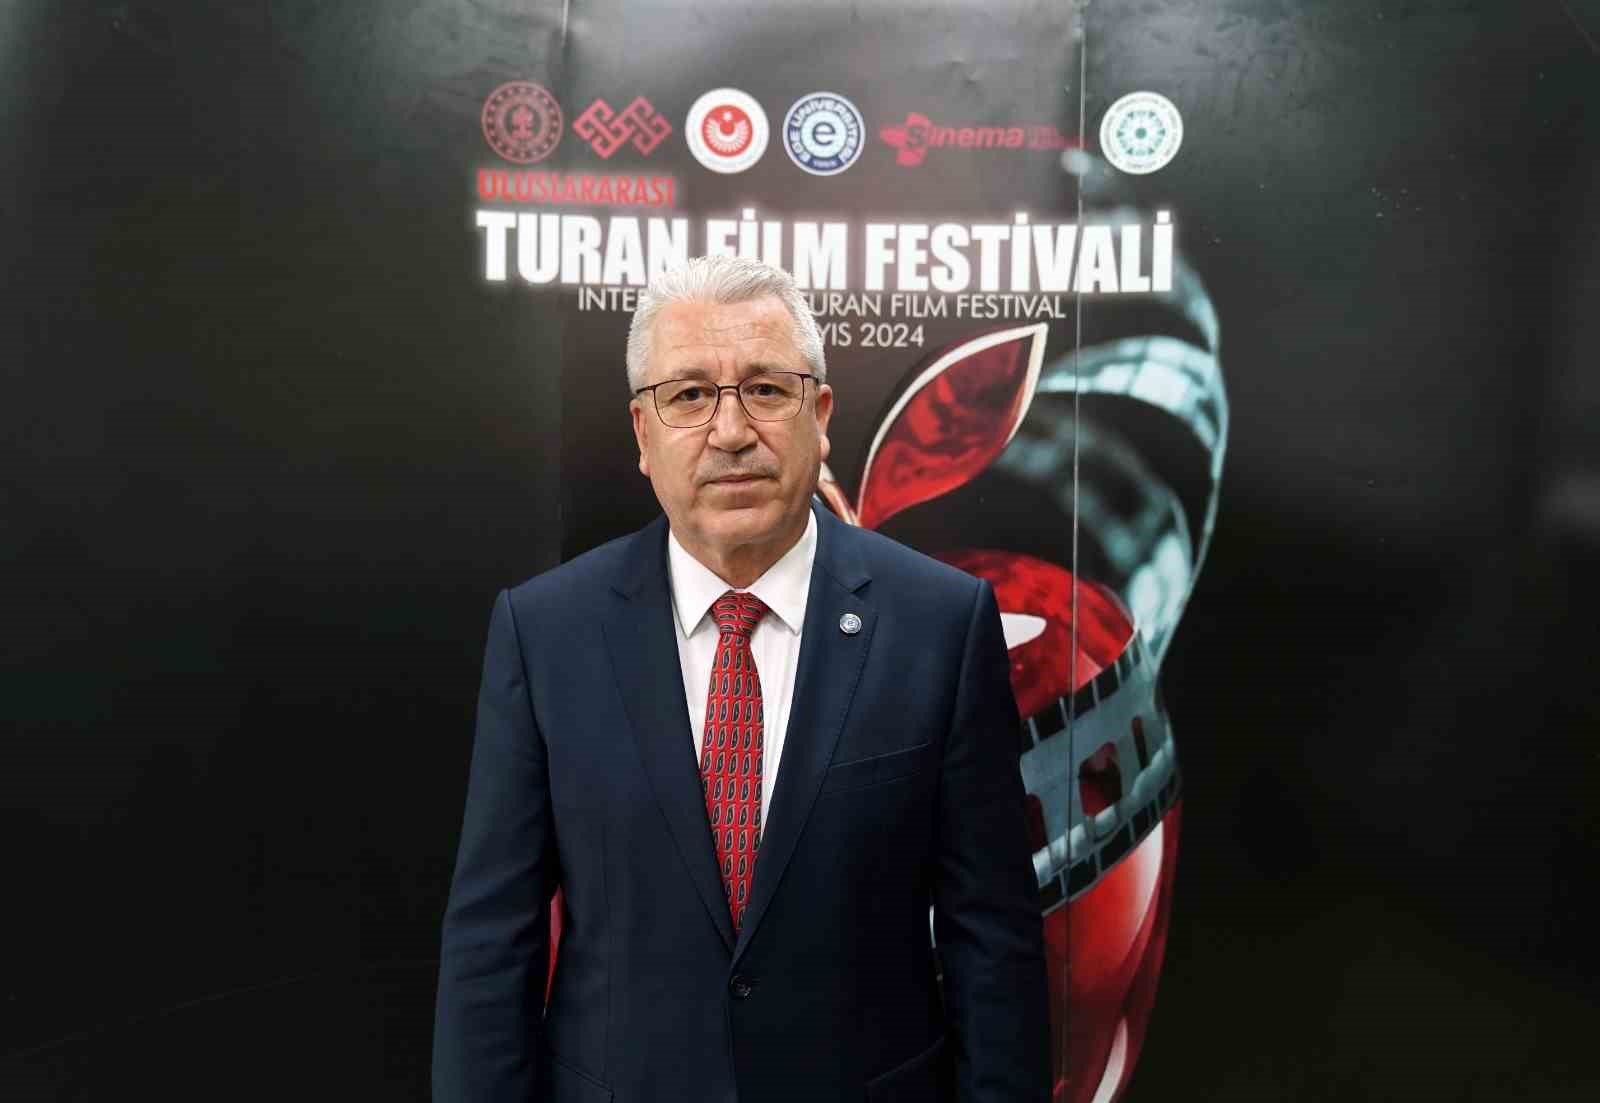 Turan Film Festivali İzmir’de başlıyor
